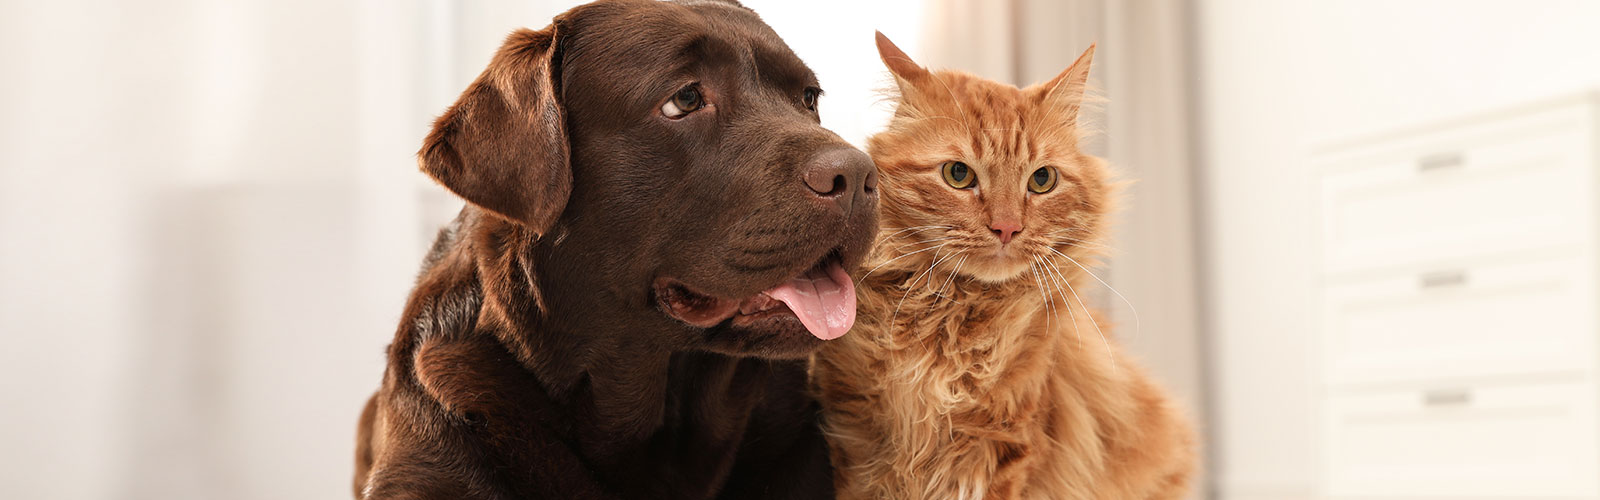 Hund und Katze gemeinsam auf einem Bild. Erfahren Sie, wie Sie ihr Haustier vor Parasiten schützen.